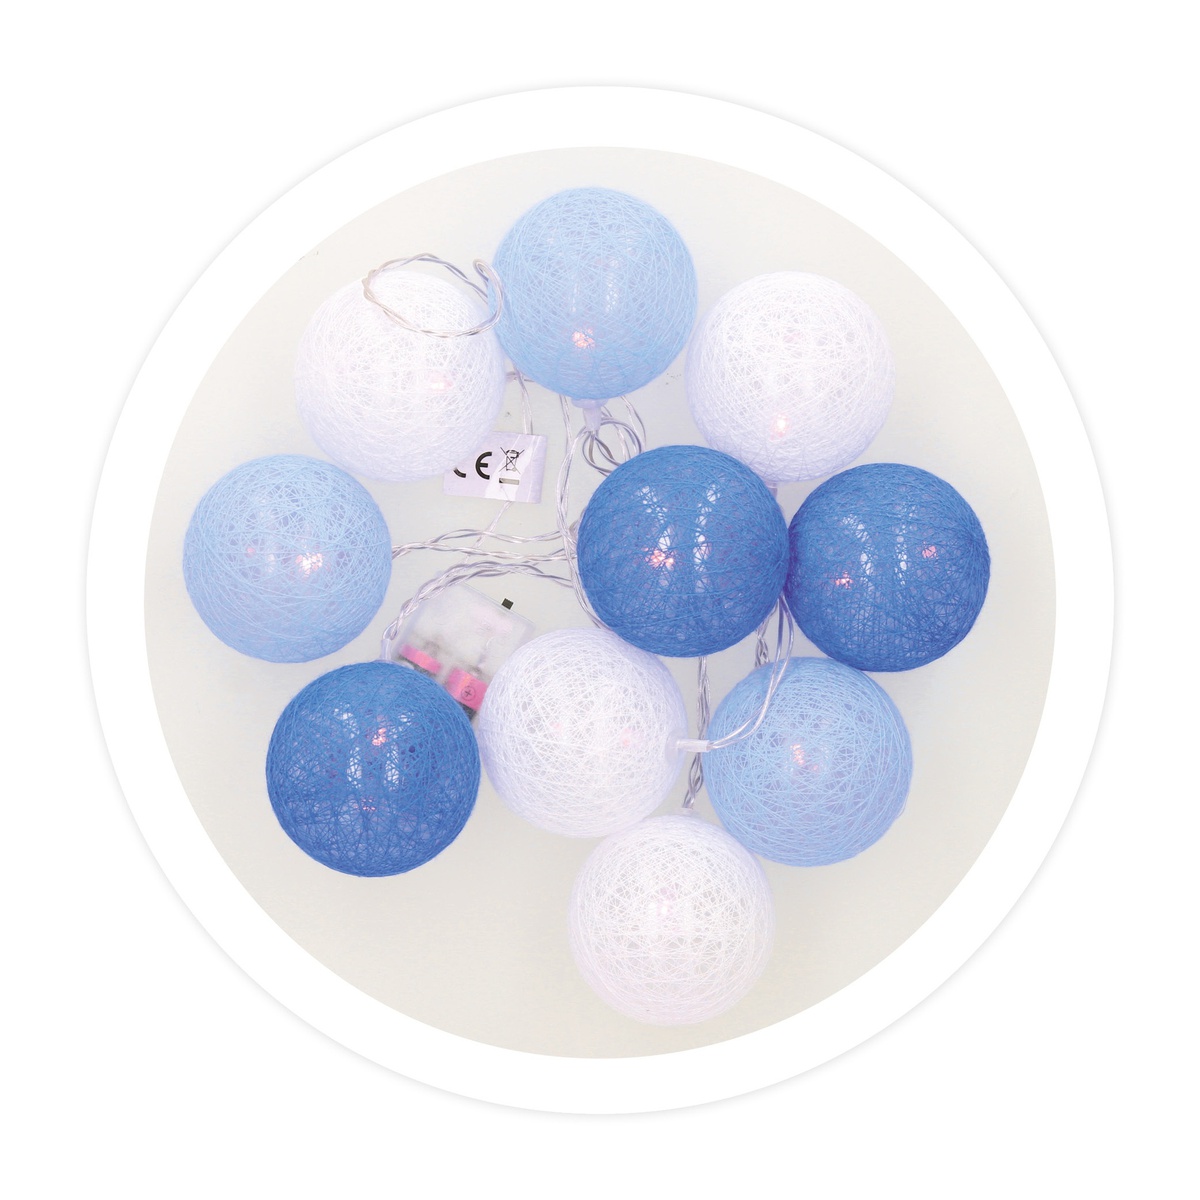 Guirnalda LED de bolas azules de algodón 1,35 M Luz cálida